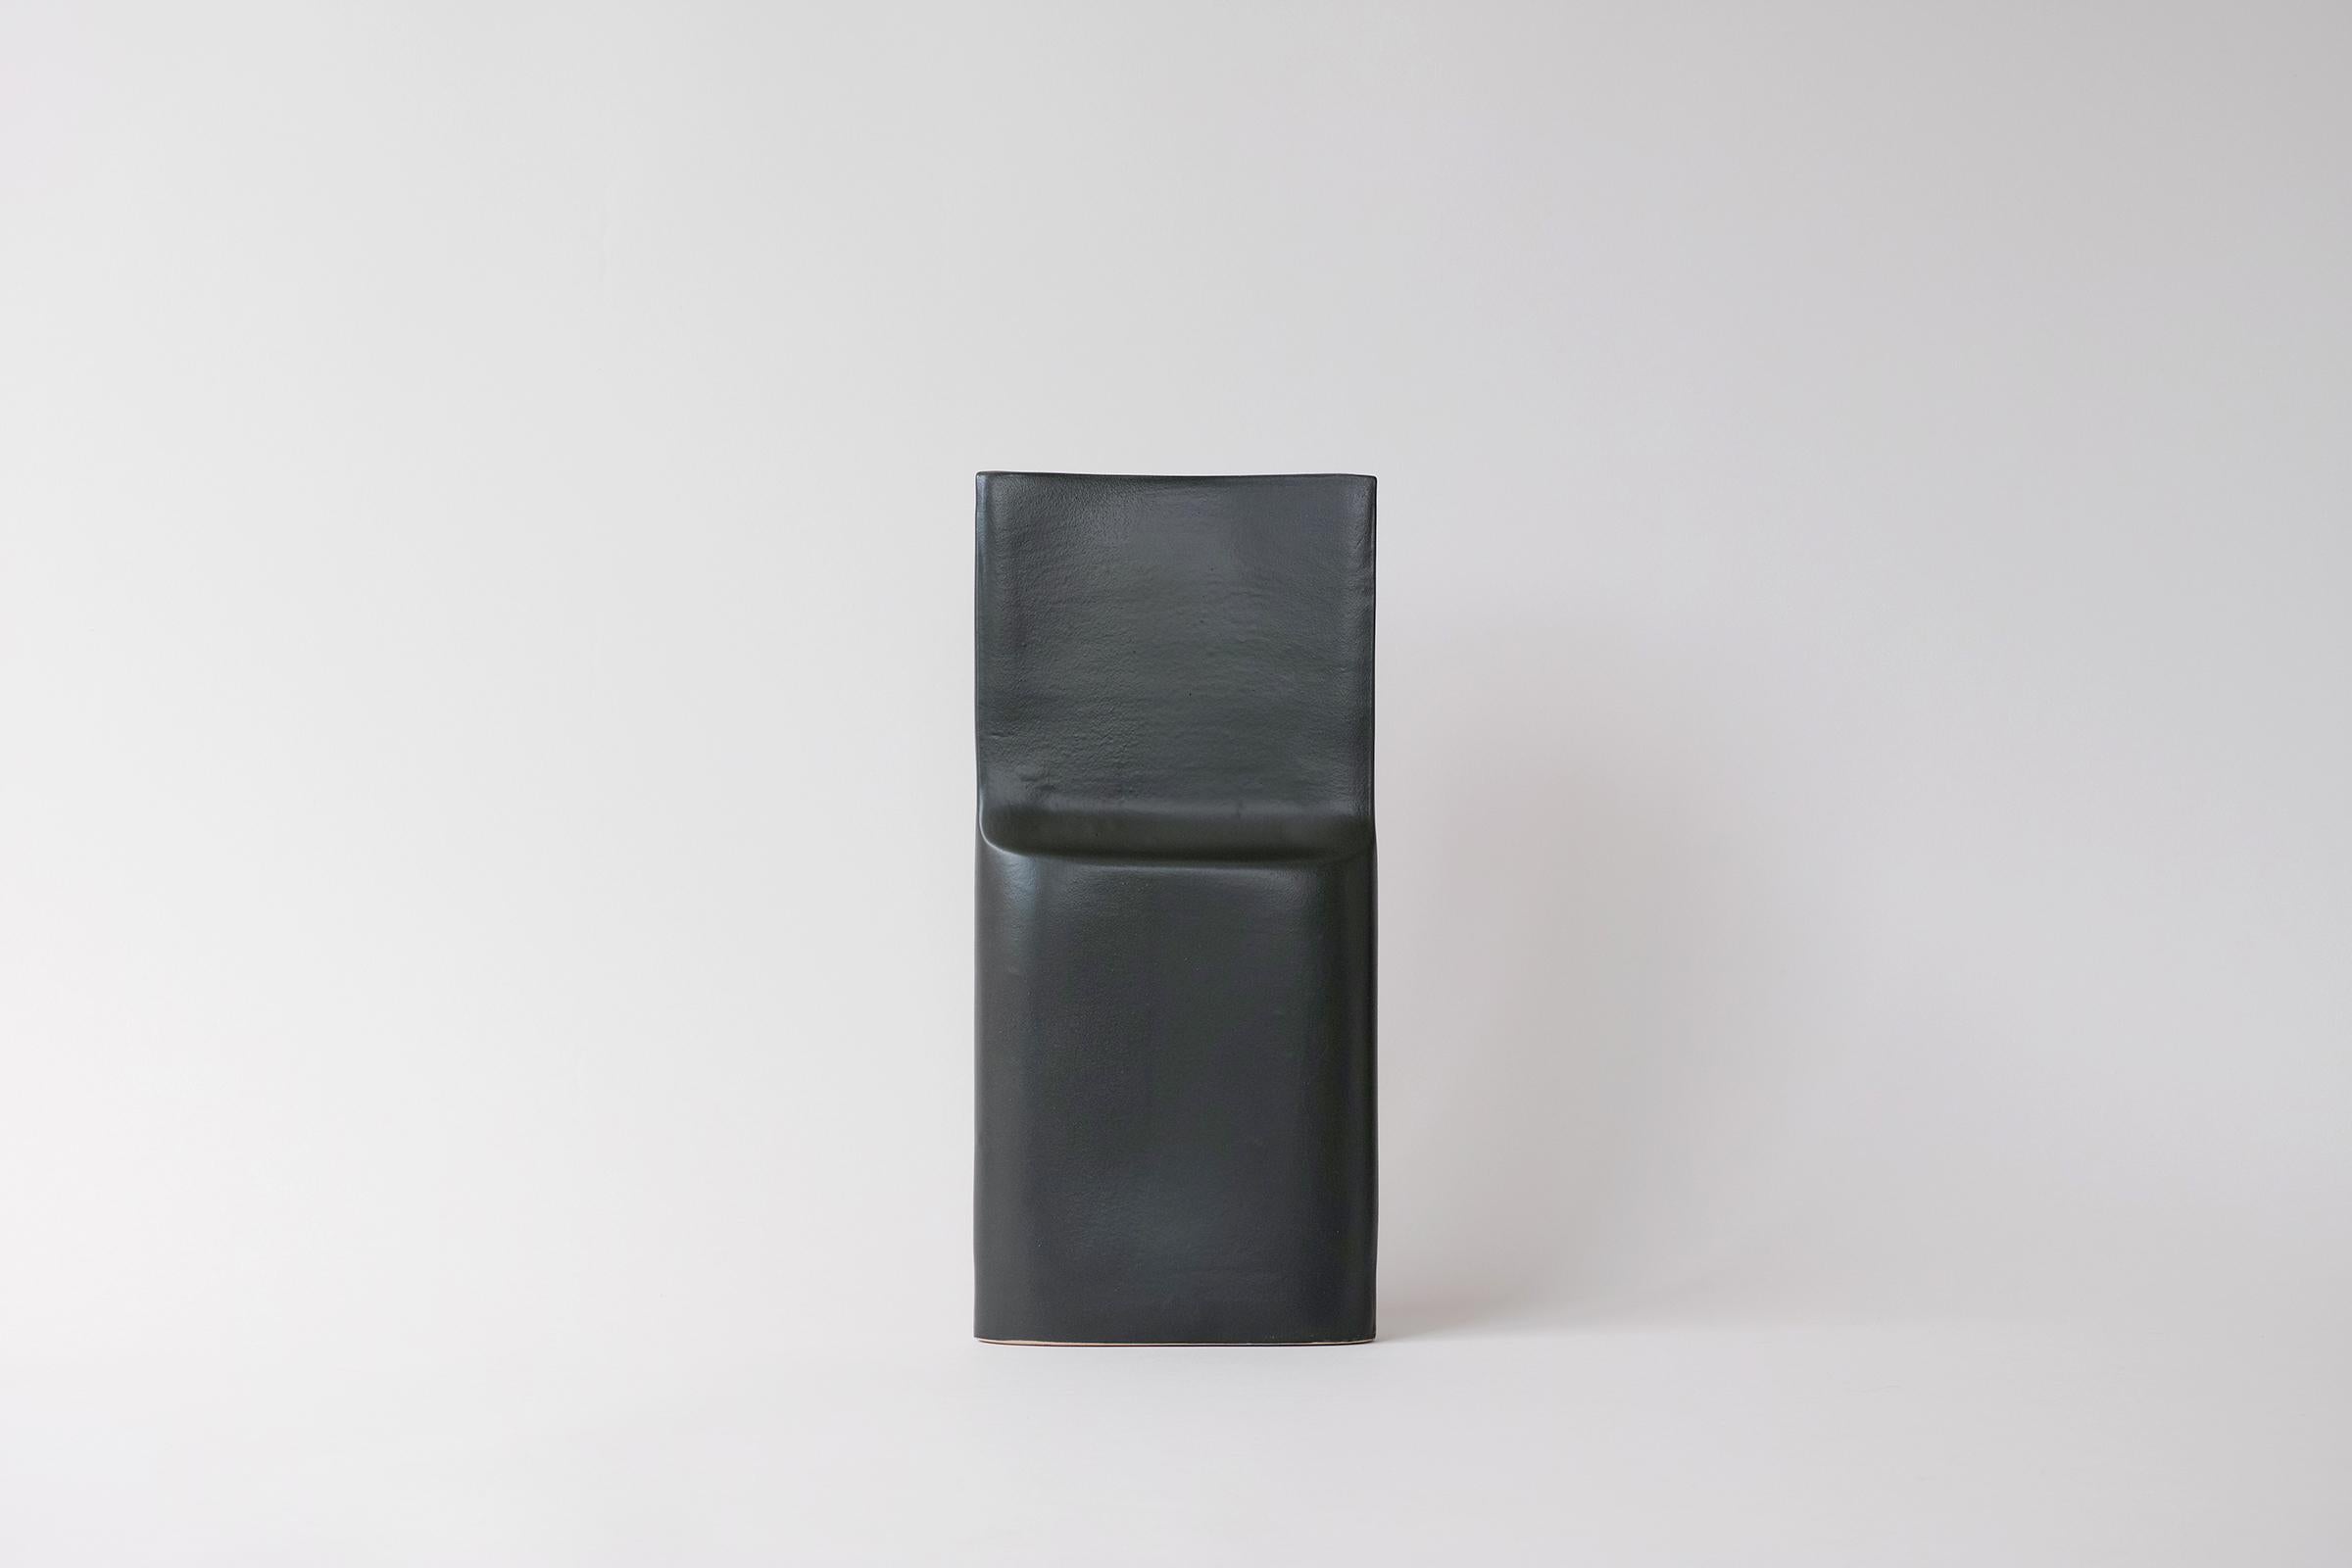 Nous vous proposons ce vase modèle #2017 de David Gil pour Bennington Potters. Le vase se présente sous la forme d'un bloc rectangulaire à l'avant, avec un décrochement vers le haut, il est mince sur le côté et légèrement incurvé à l'arrière. Il est